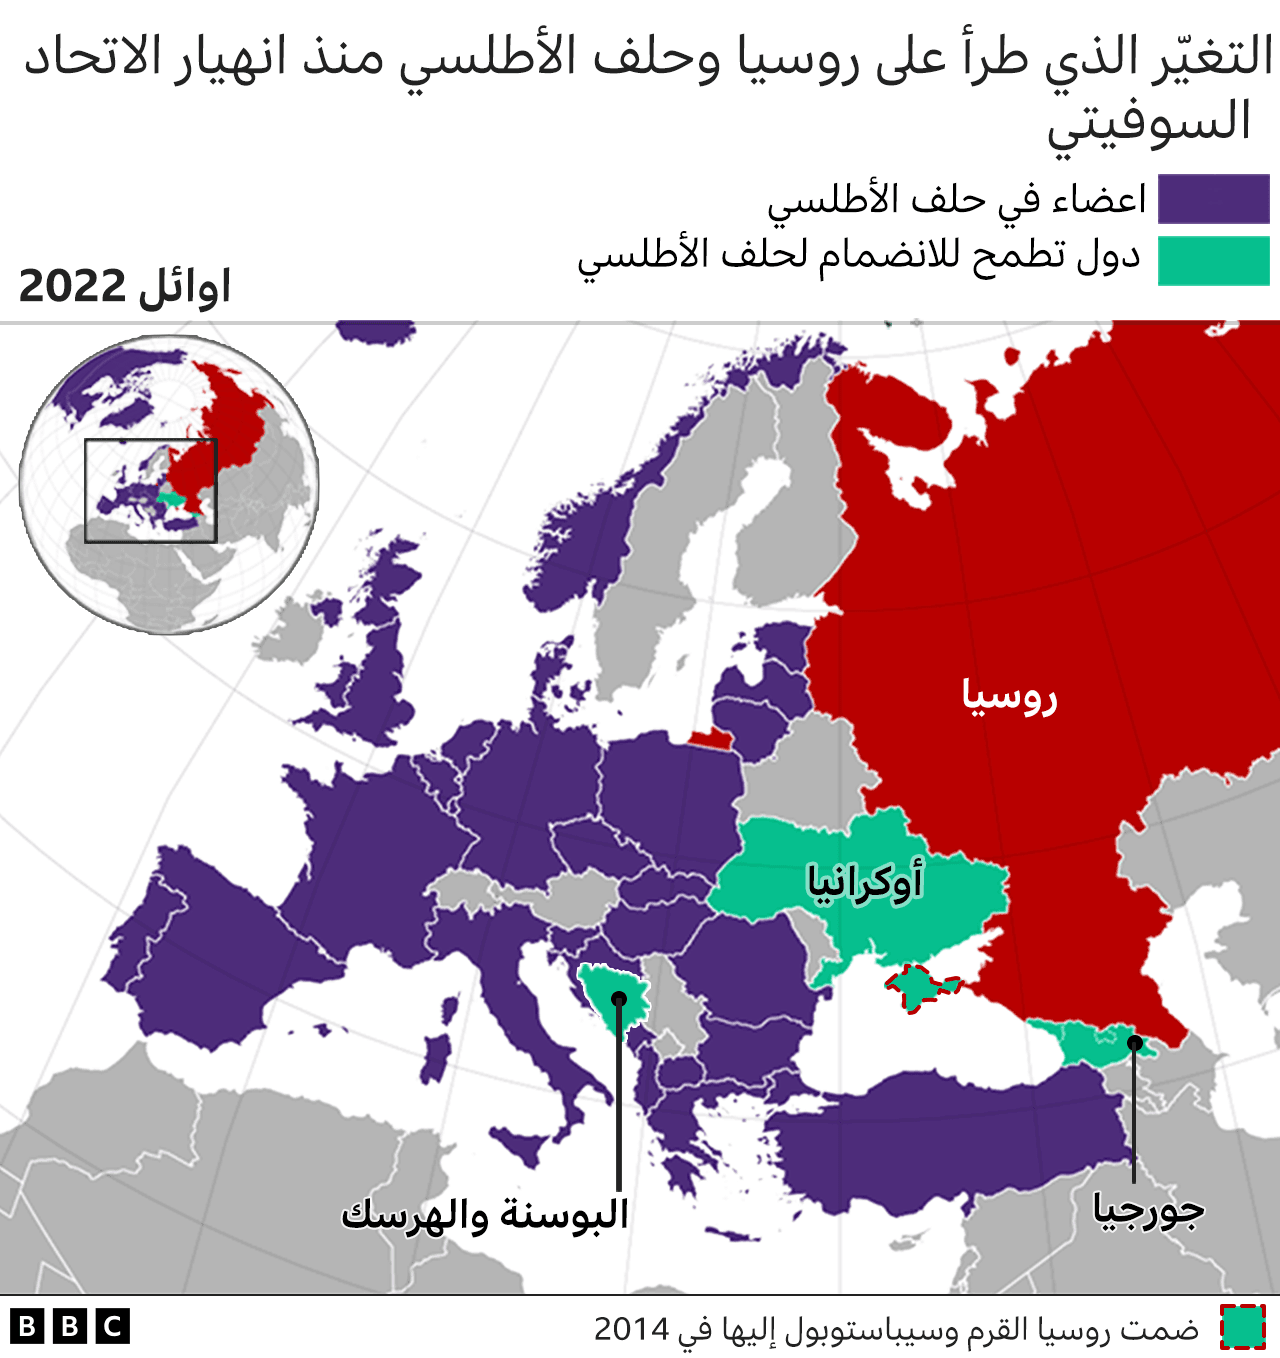 خريطة لأعضاء الناتو والدول الراغبة في الانضمام إليه في أوائل 2022